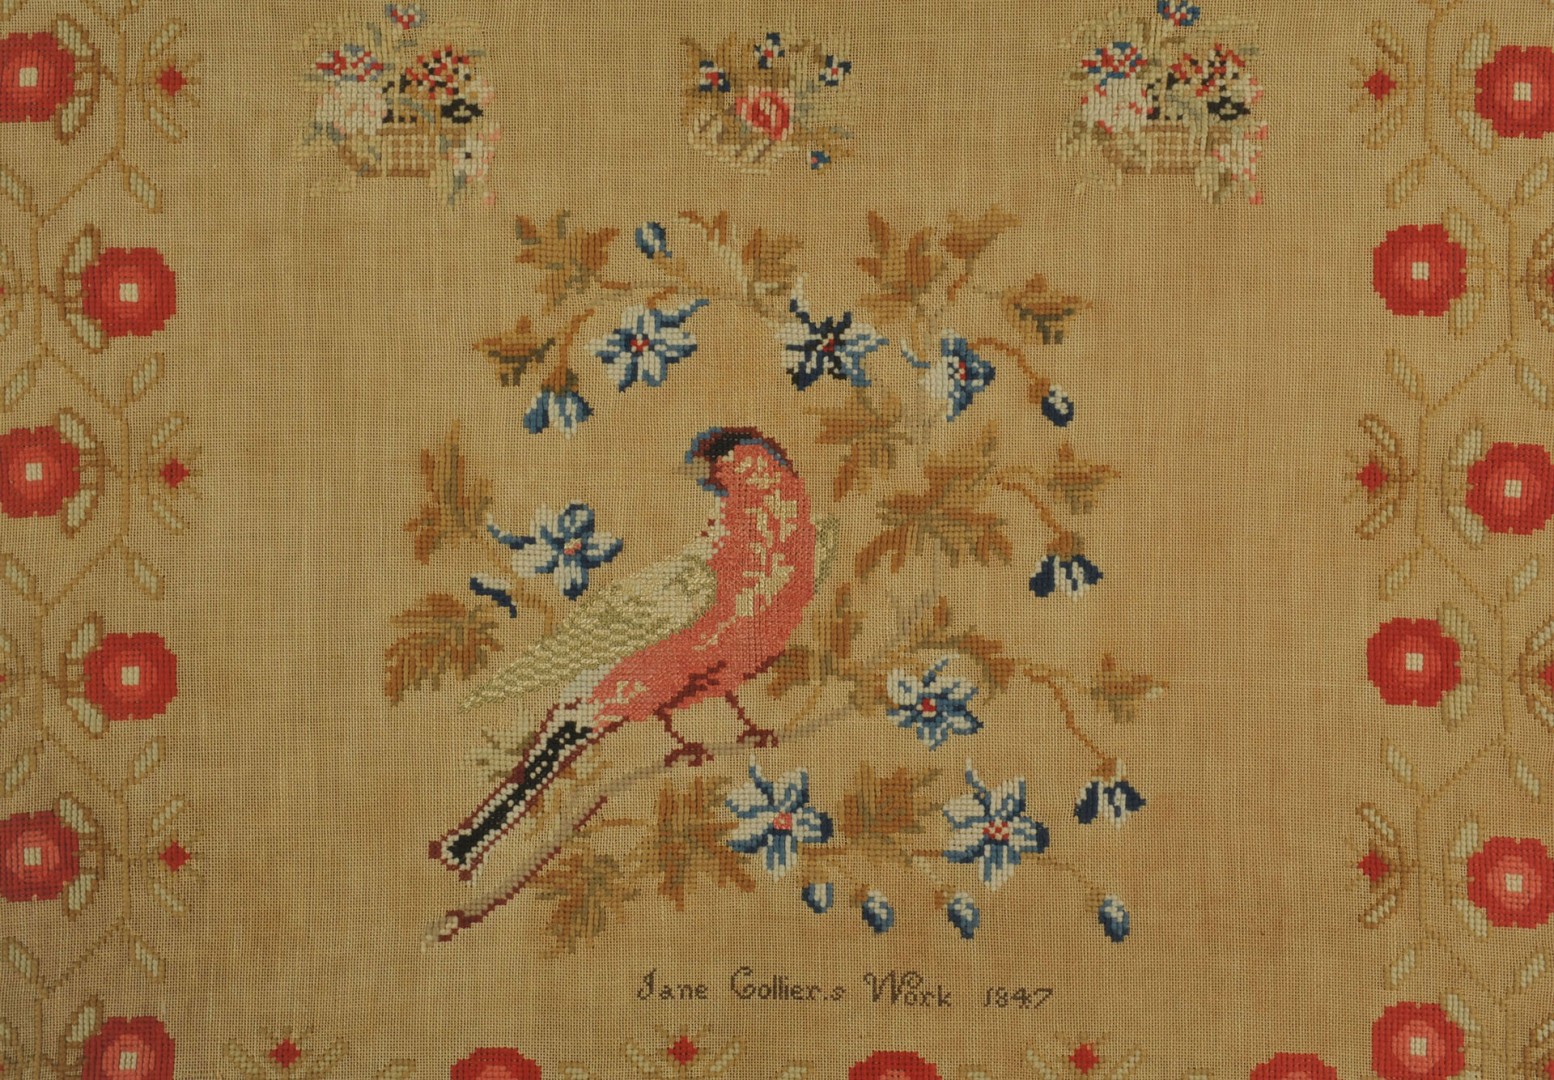 Lot 653: English needlework sampler, Jane Collier